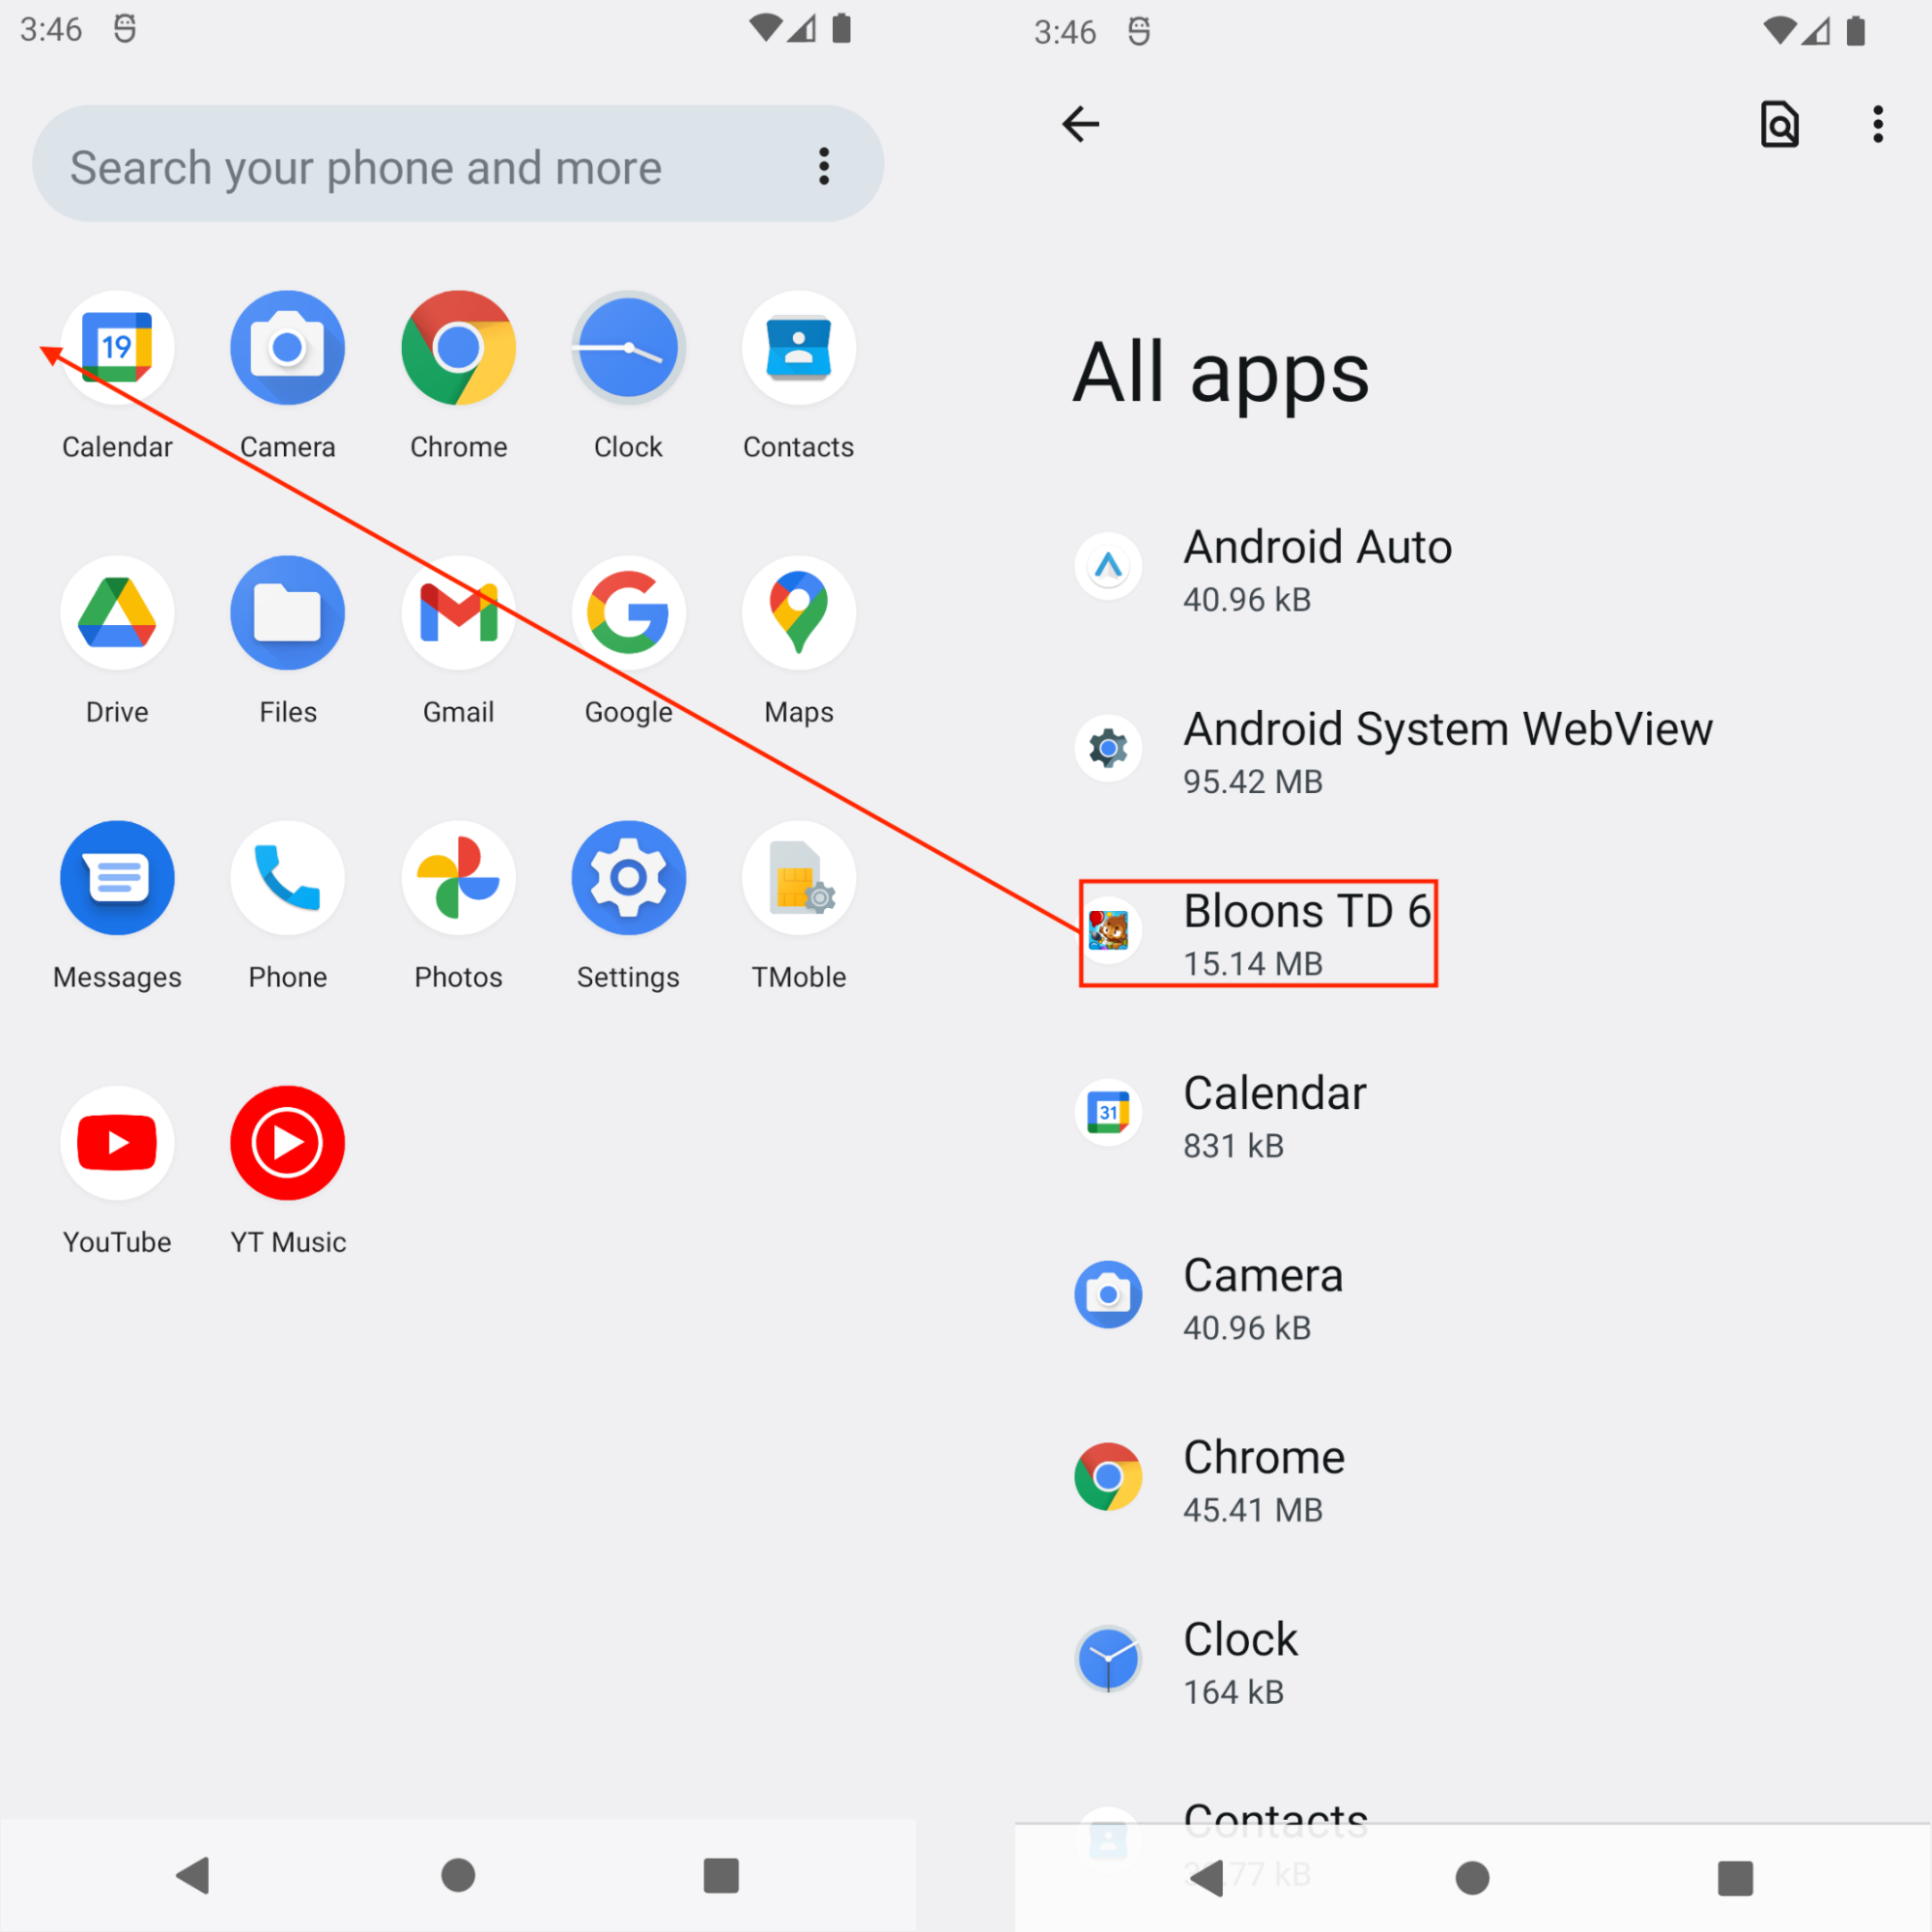 画像 9 は、Android ランチャー メニューとアプリケーションのスクリーンショットです。赤いフィールドは、Bloons TD 6 アプリケーションを強調表示しています。赤い矢印はアプリケーションのリストを示しています。